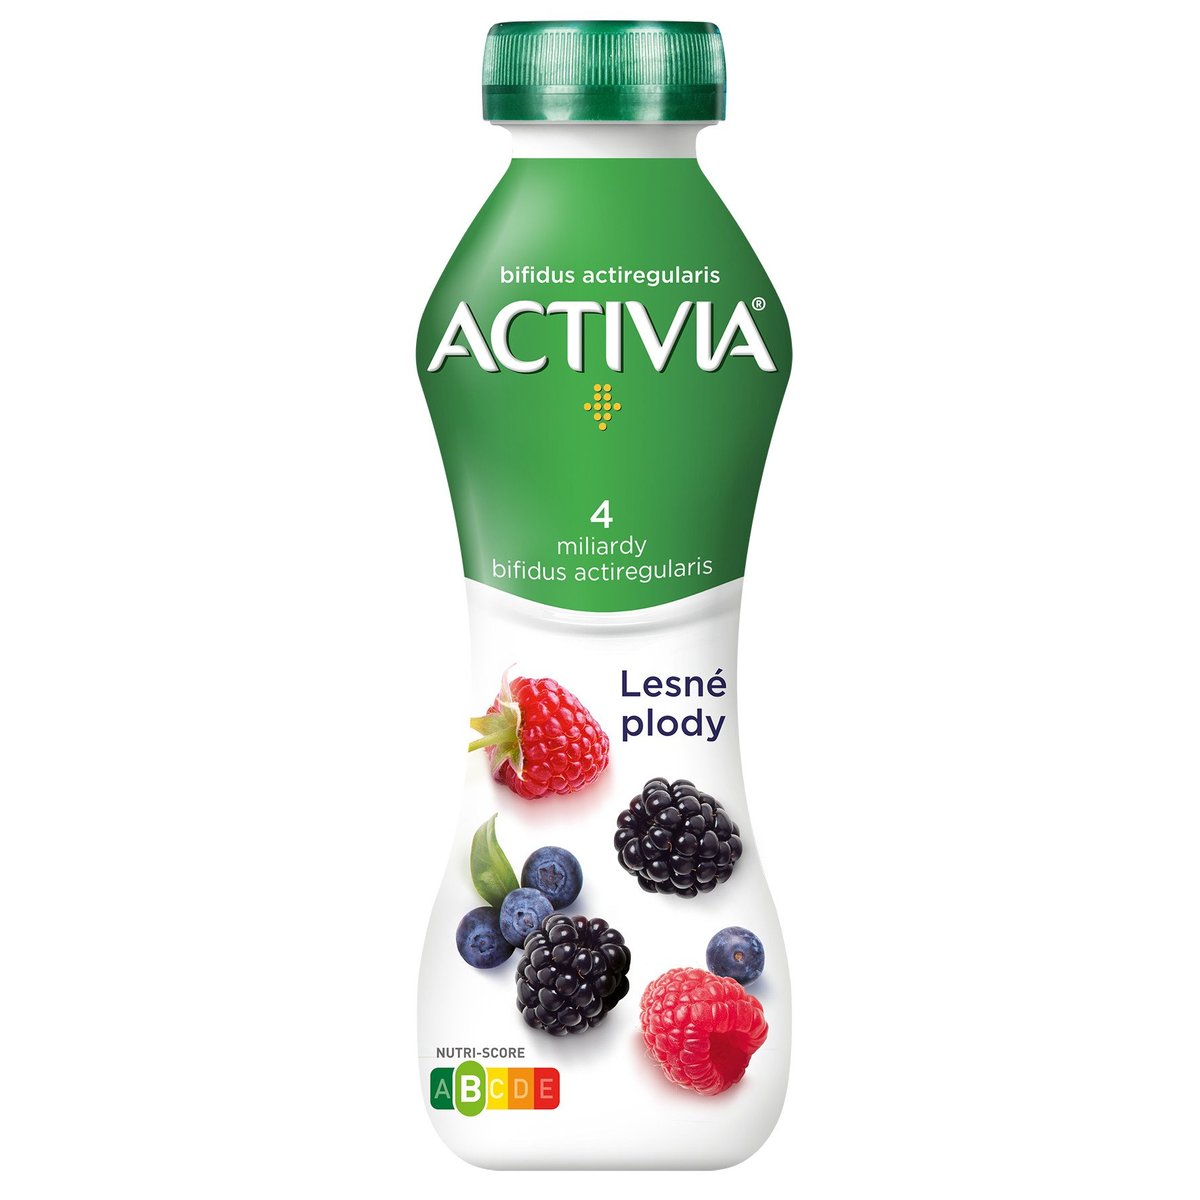 Activia Probiotický jogurtový nápoj lesní plody v akci